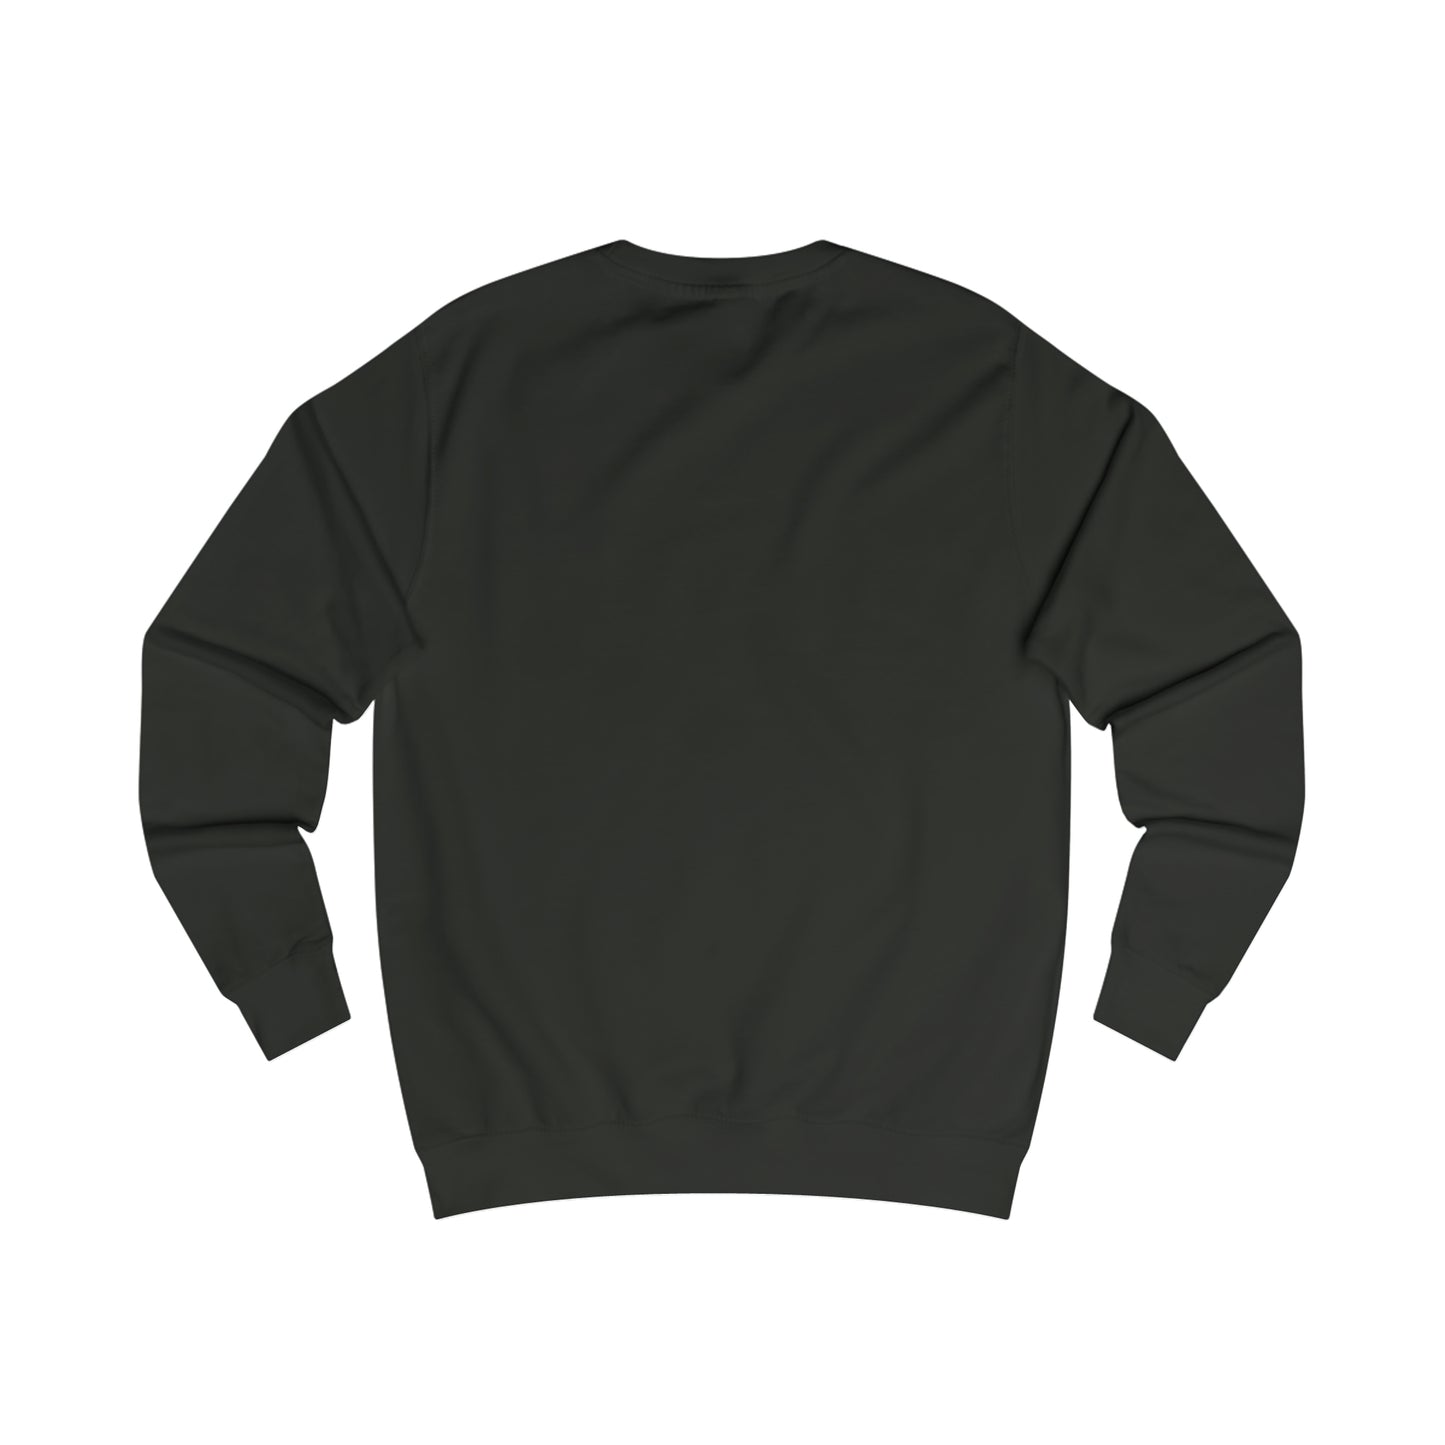 Men's SC classics sweatshirt